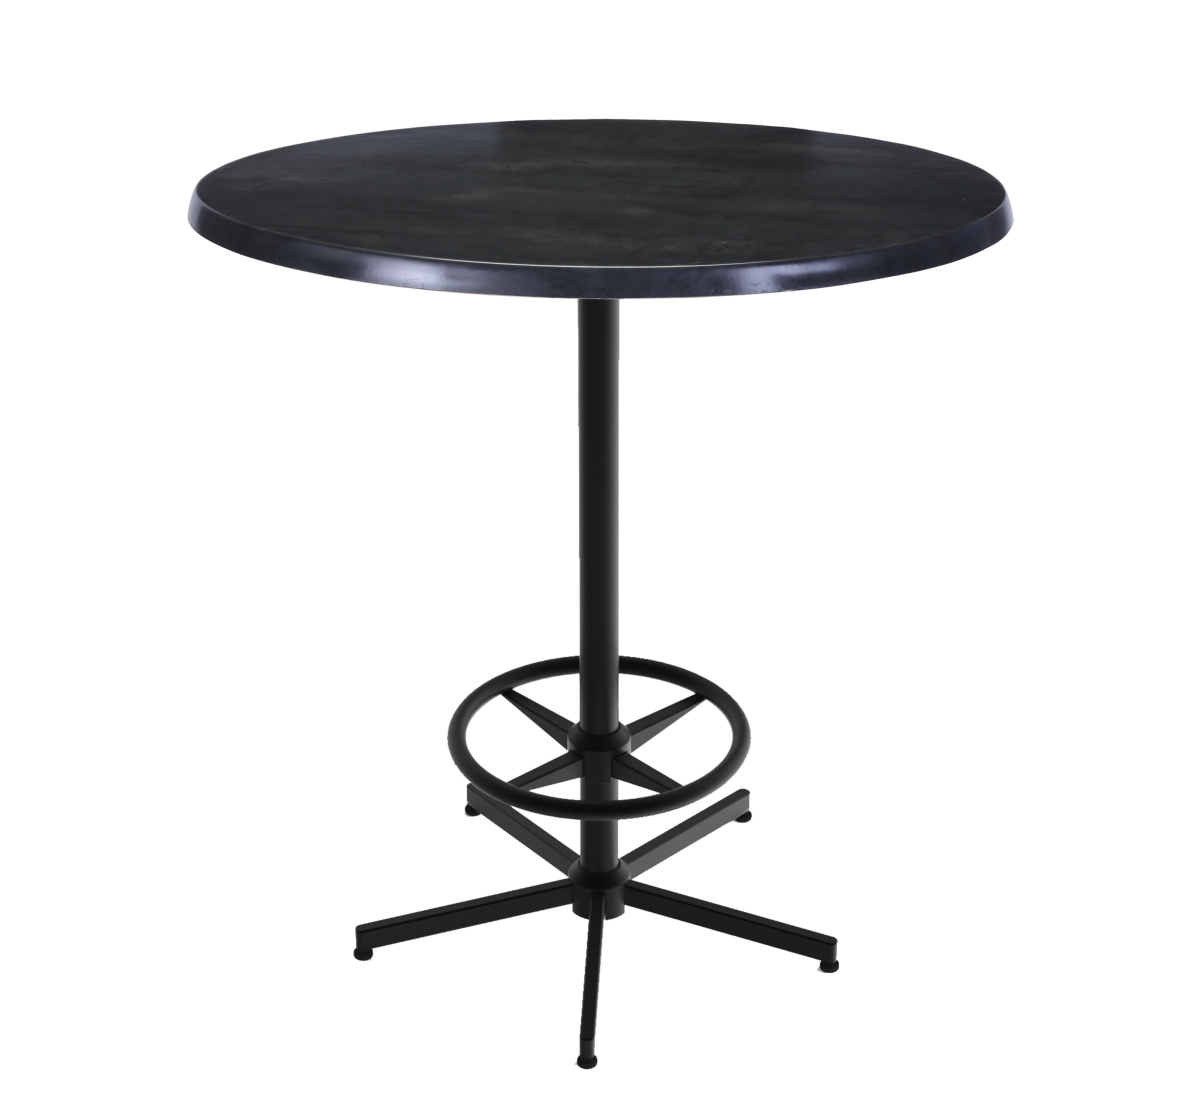 42 In. Black Table With 36 In. Diameter Indoor & Outdoor Black Steel Round Top